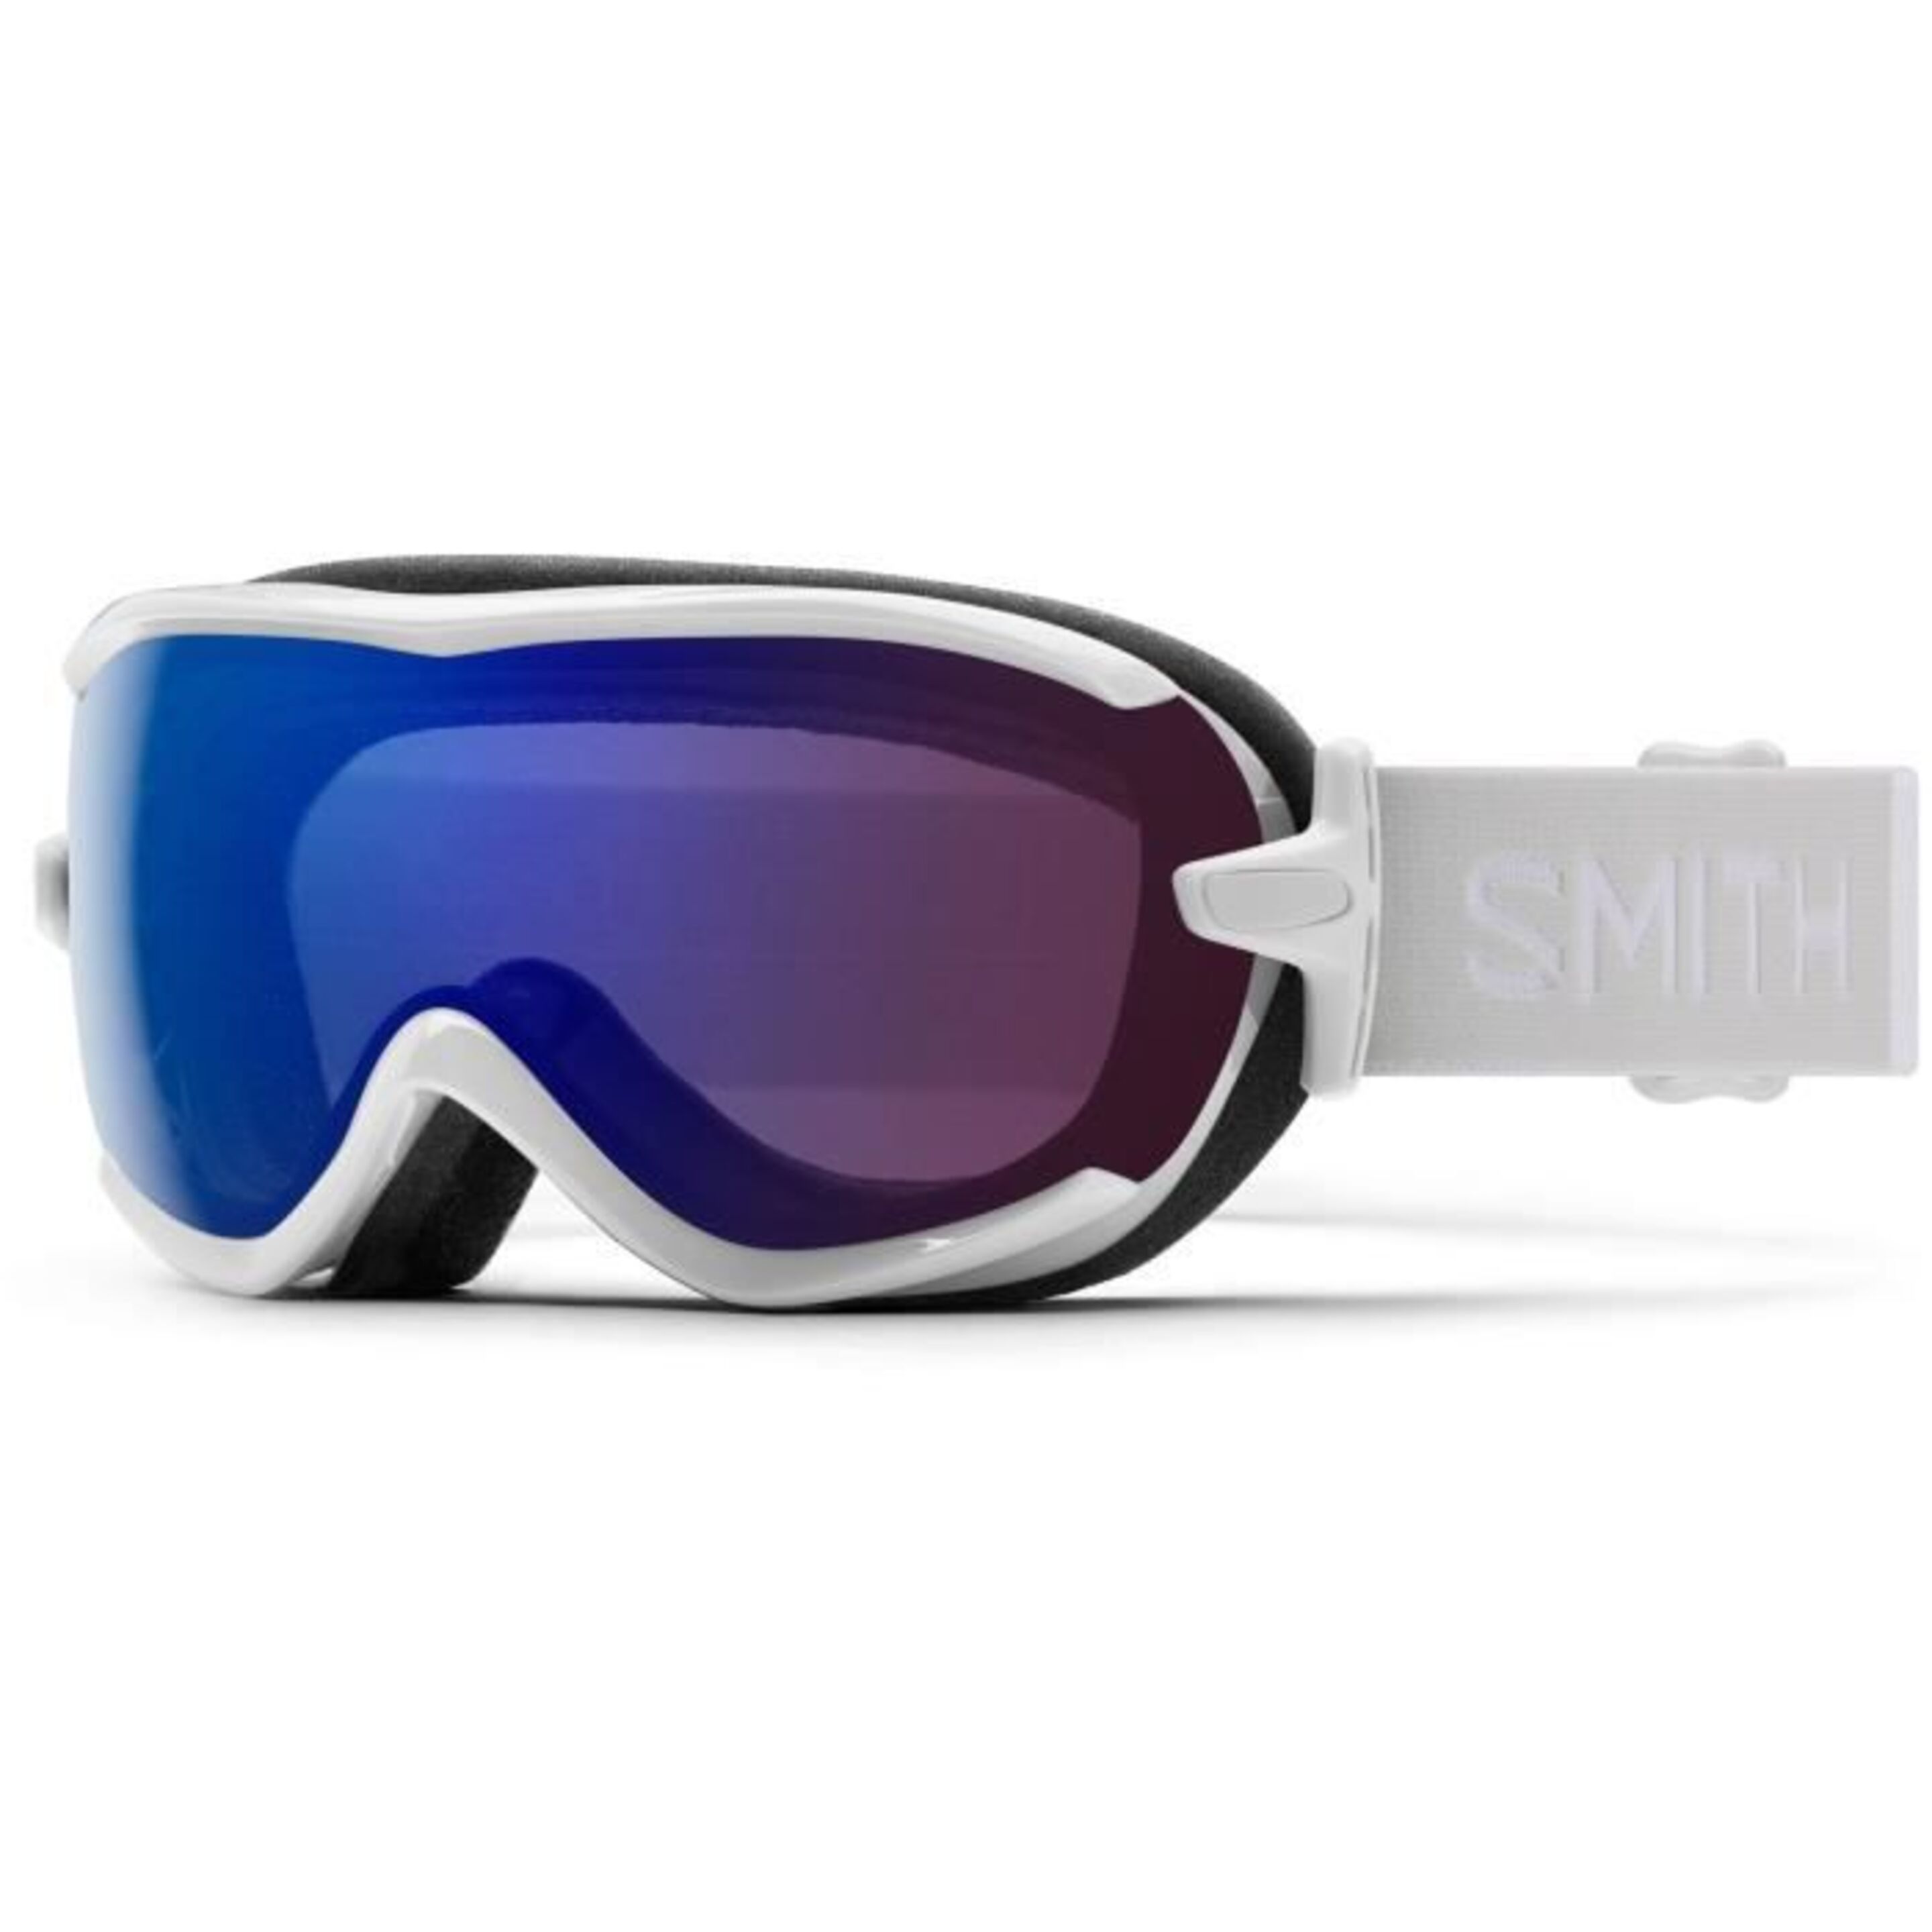 Gafas De Esquí Smith Modelo Virtue